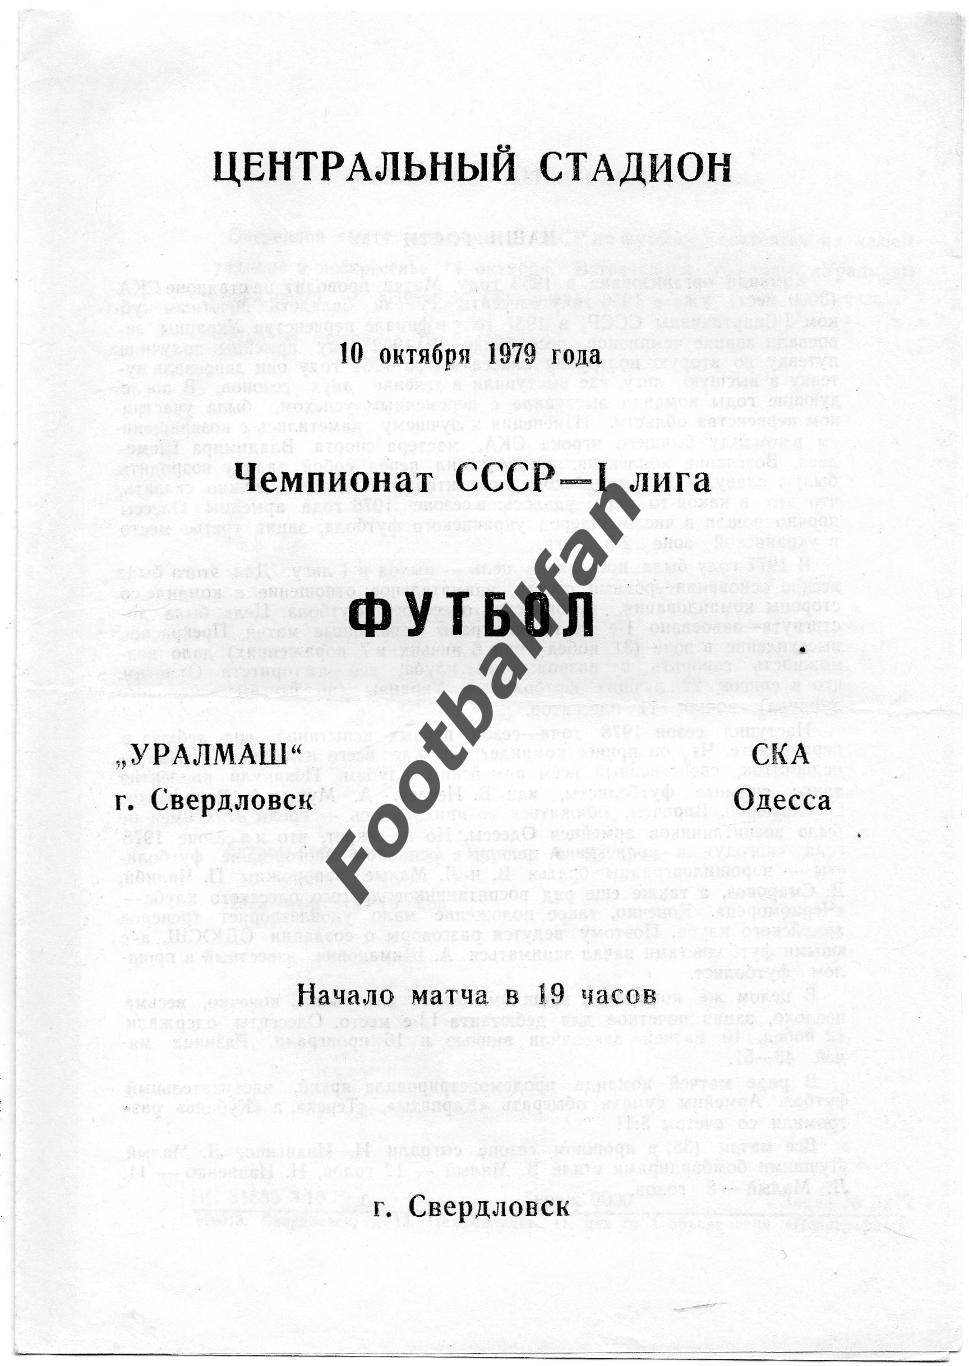 Уралмаш Свердловск - СКА Одесса 10.10.1979